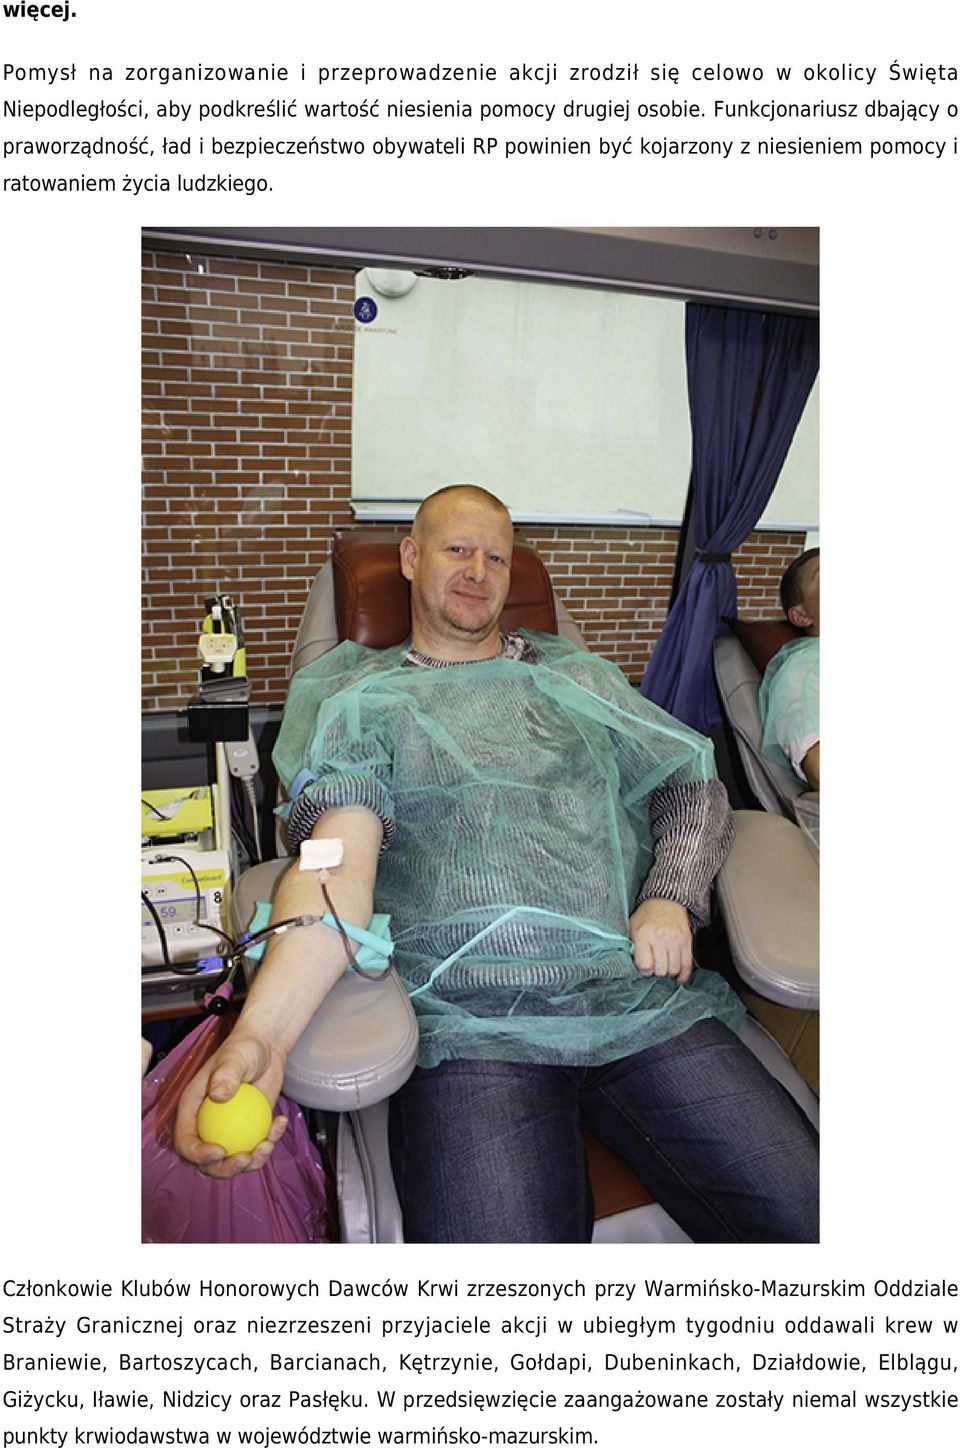 Członkowie Klubów Honorowych Dawców Krwi zrzeszonych przy Warmińsko-Mazurskim Oddziale Straży Granicznej oraz niezrzeszeni przyjaciele akcji w ubiegłym tygodniu oddawali krew w